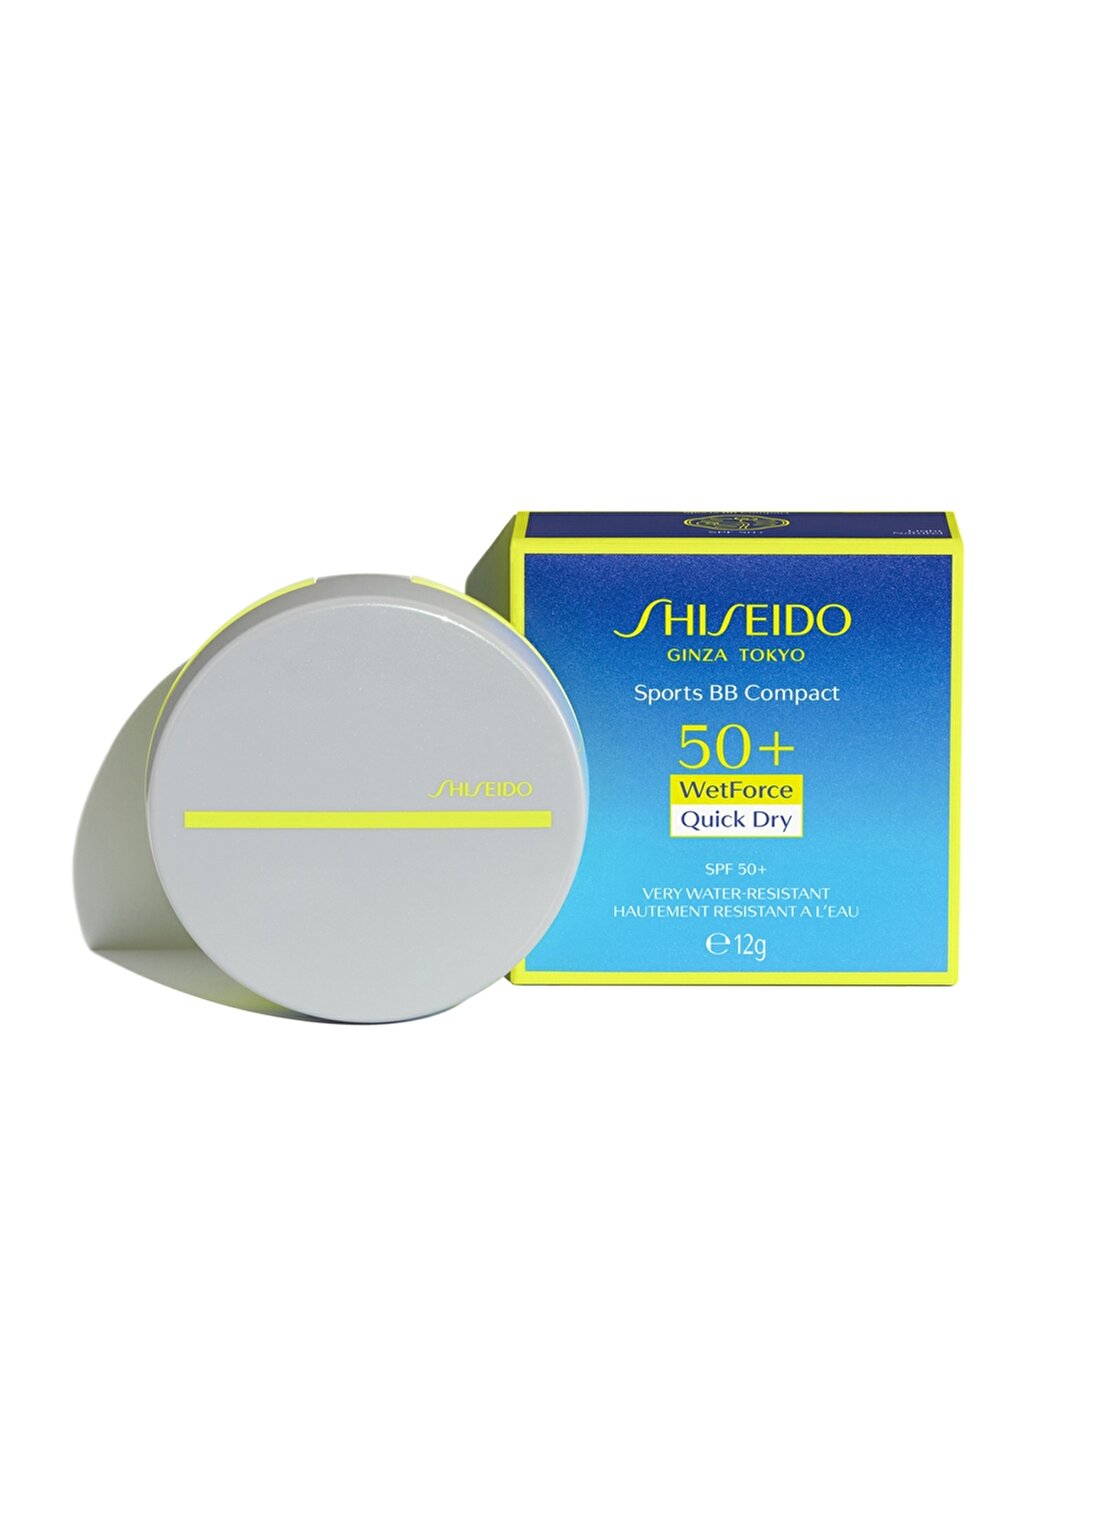 Shiseido Spf 50 Korumalı Suya Ve Tere Dayanıklı Bb Krem Light Güneş Ürünü